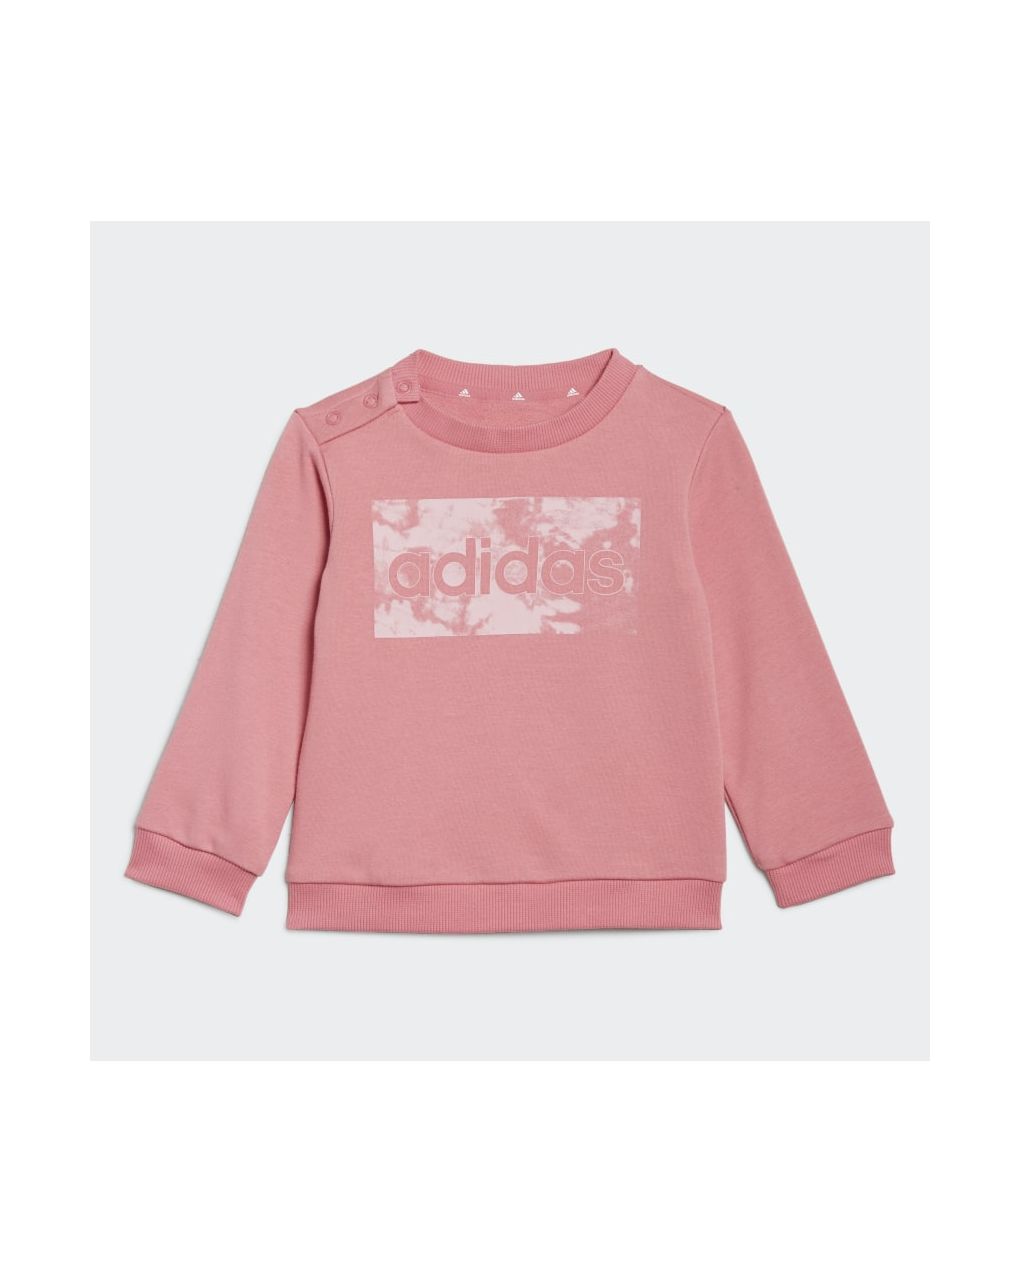 Adidas σετ φόρμας essentials ροζ/γκρι για κορίτσι gs4279 - Adidas